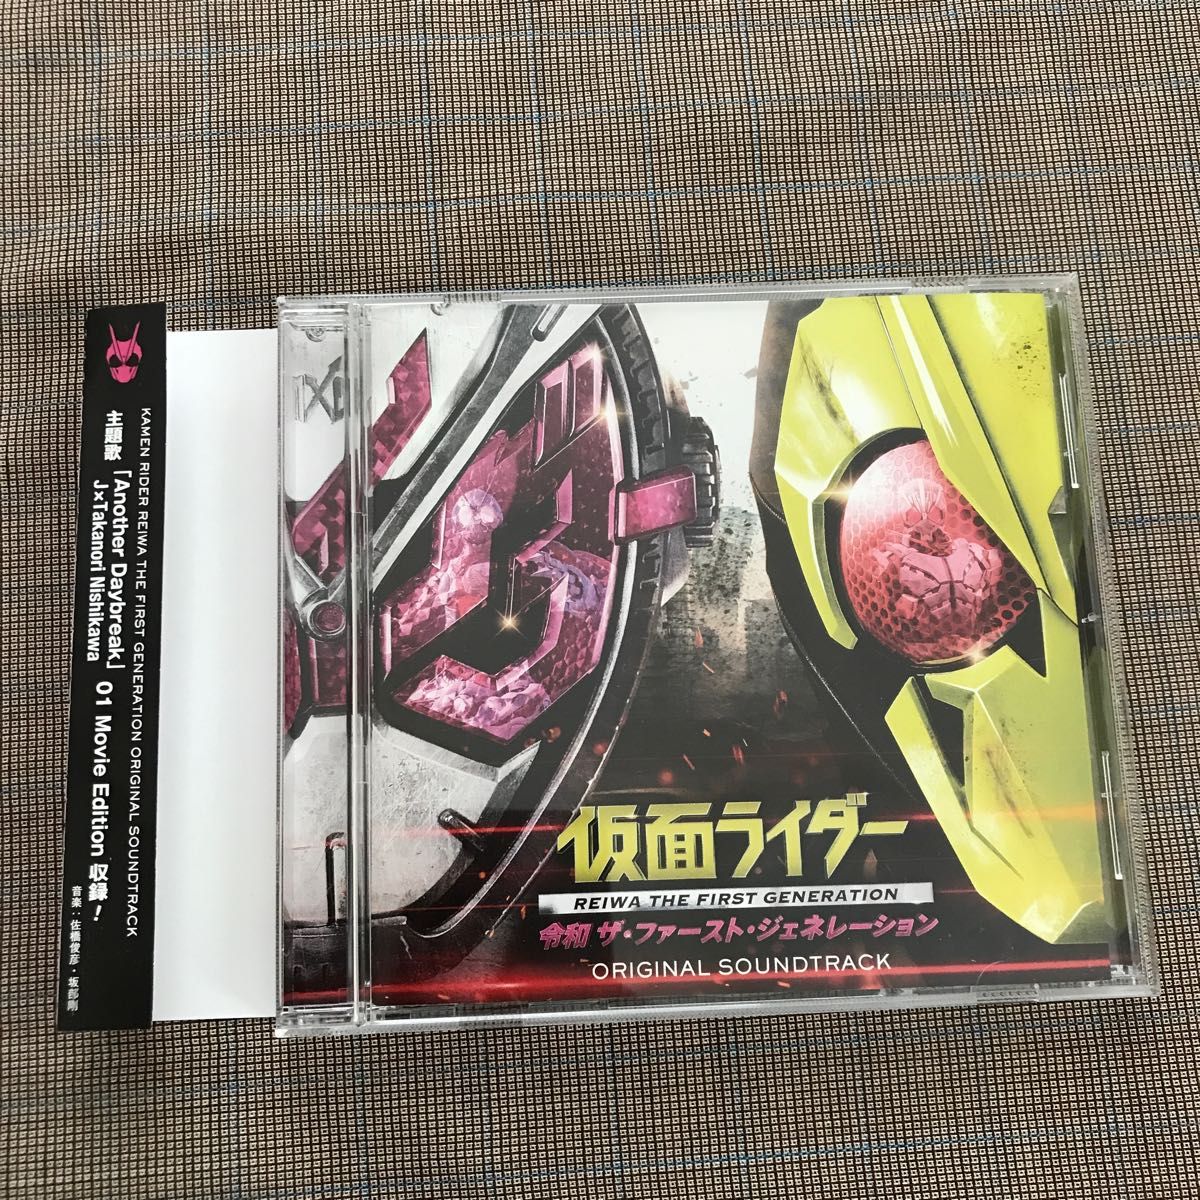 仮面ライダー 令和 ザ・ファースト・ジェネレーション オリジナルサウンドトラック レンタル落ち